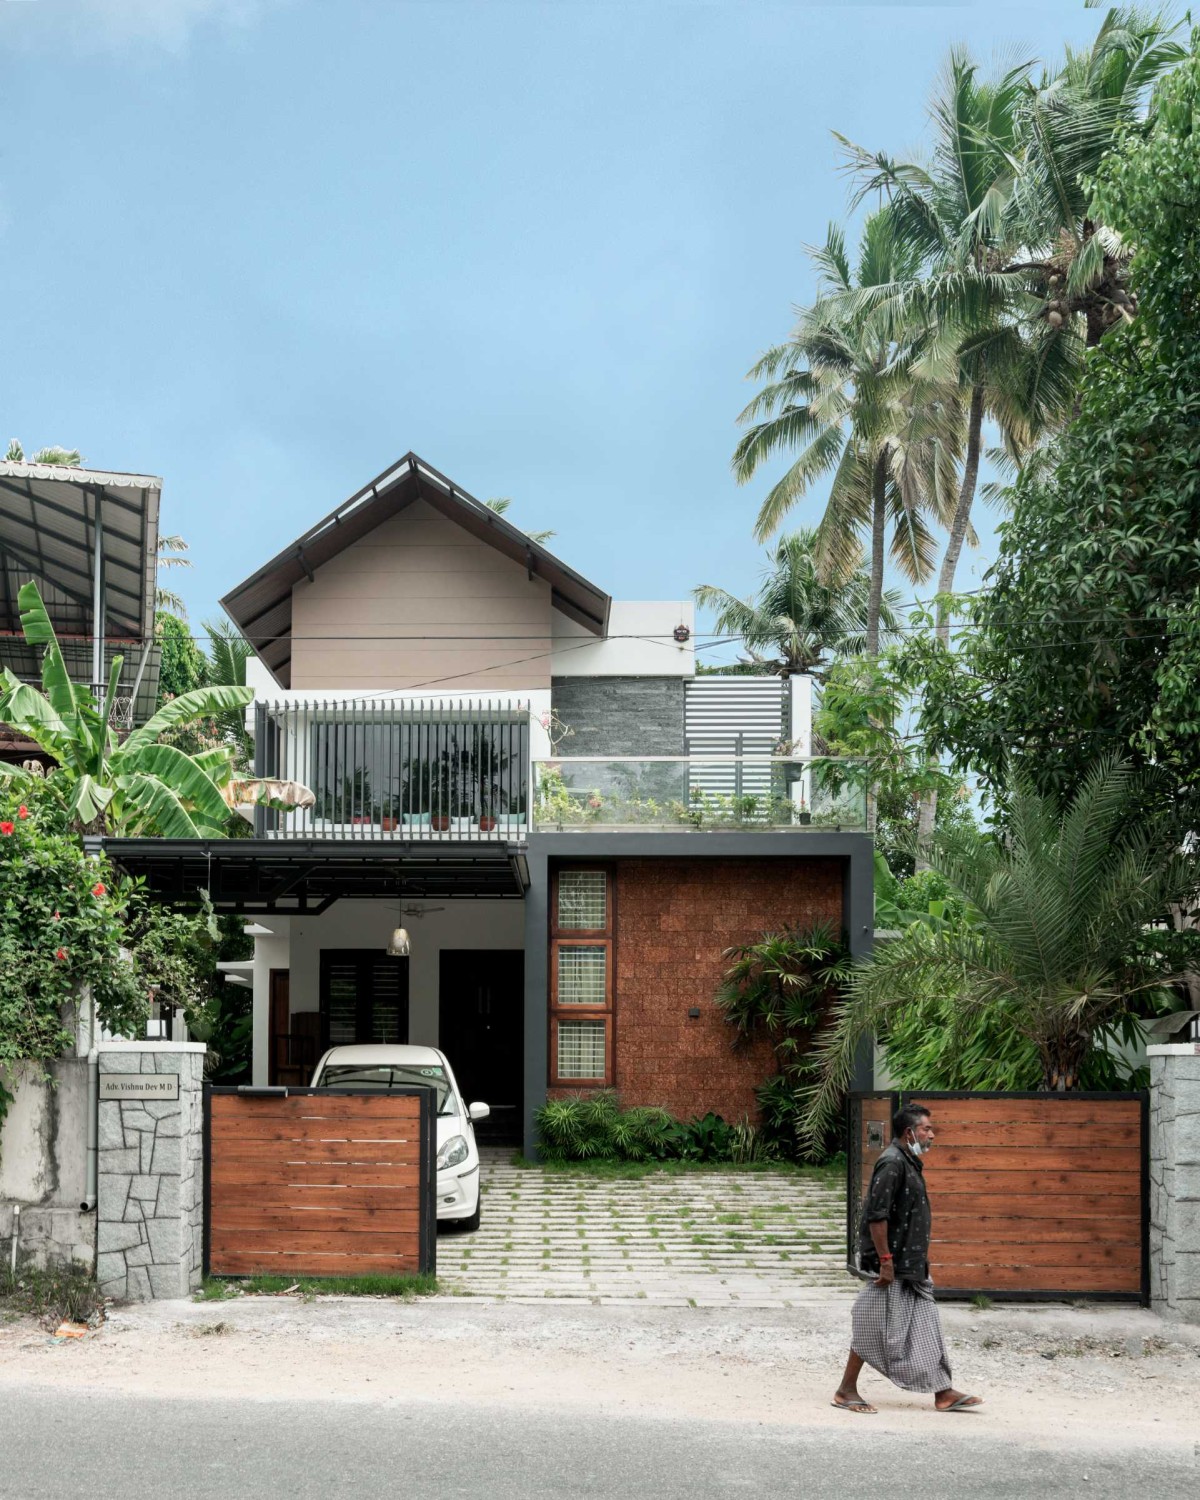 XANADU by Stria Architects